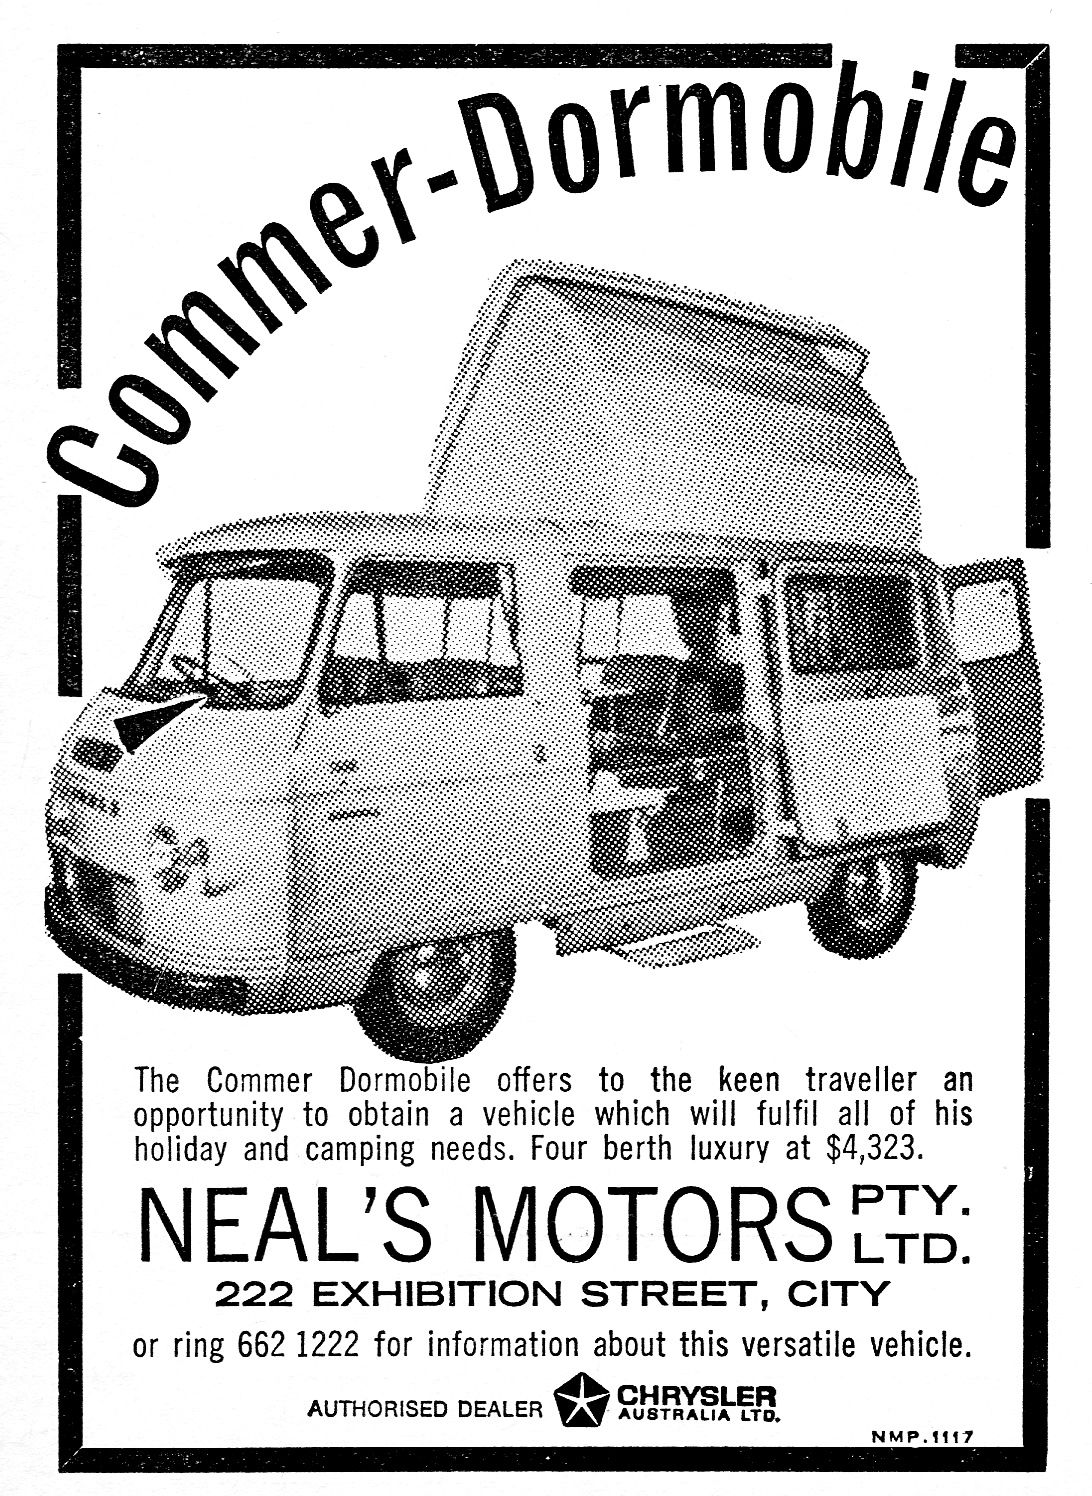 1968 Commer-Dormobile